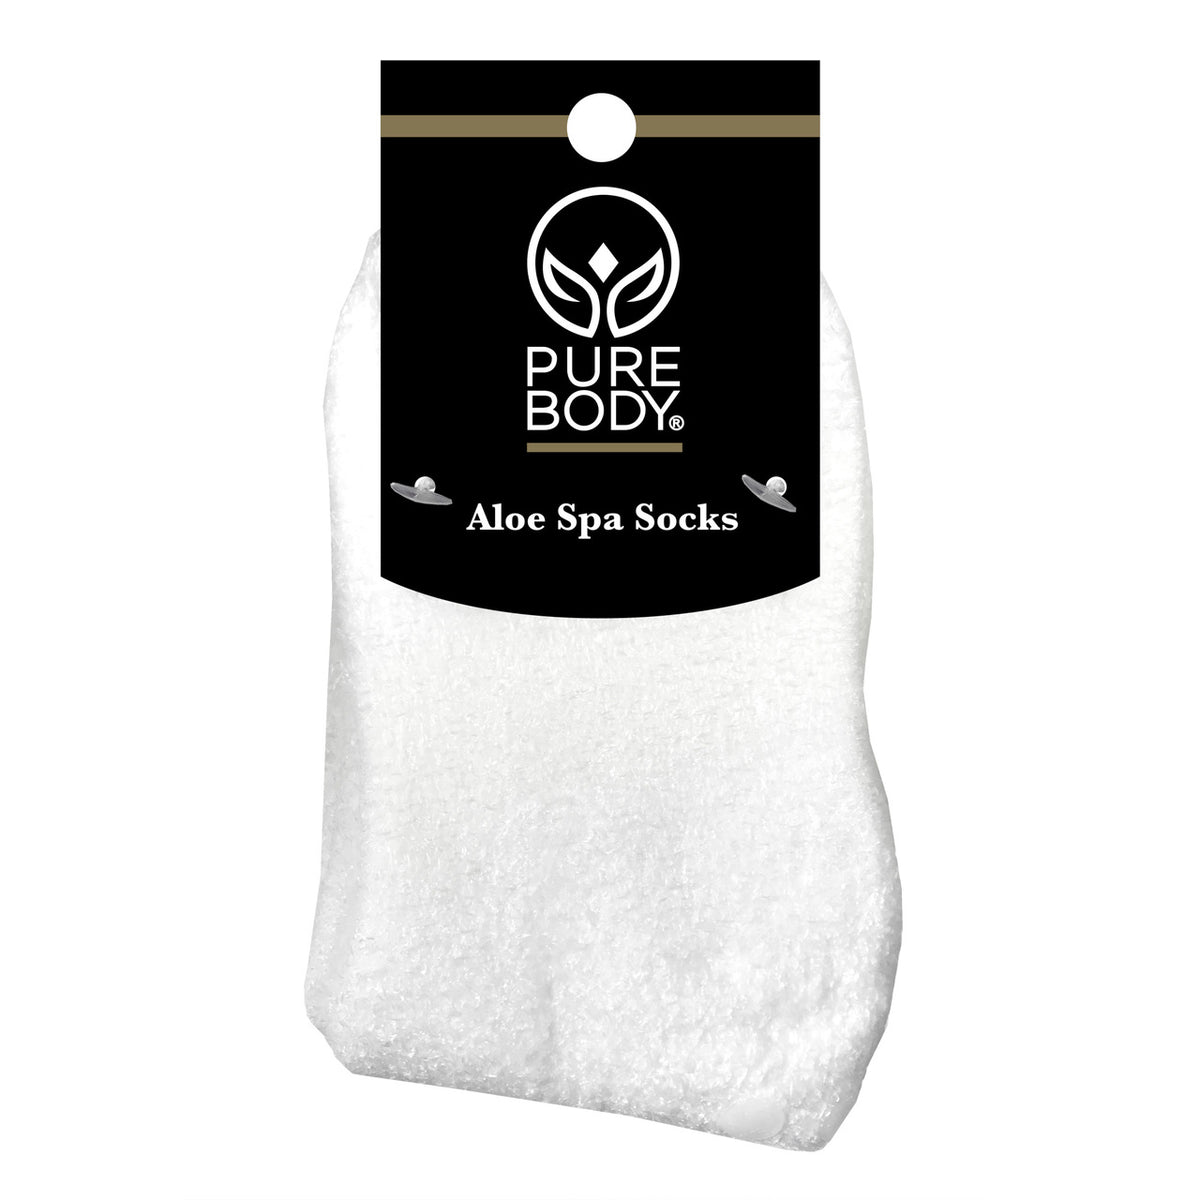 Spa Socks And Gloves Set - Aloe Infused - Black